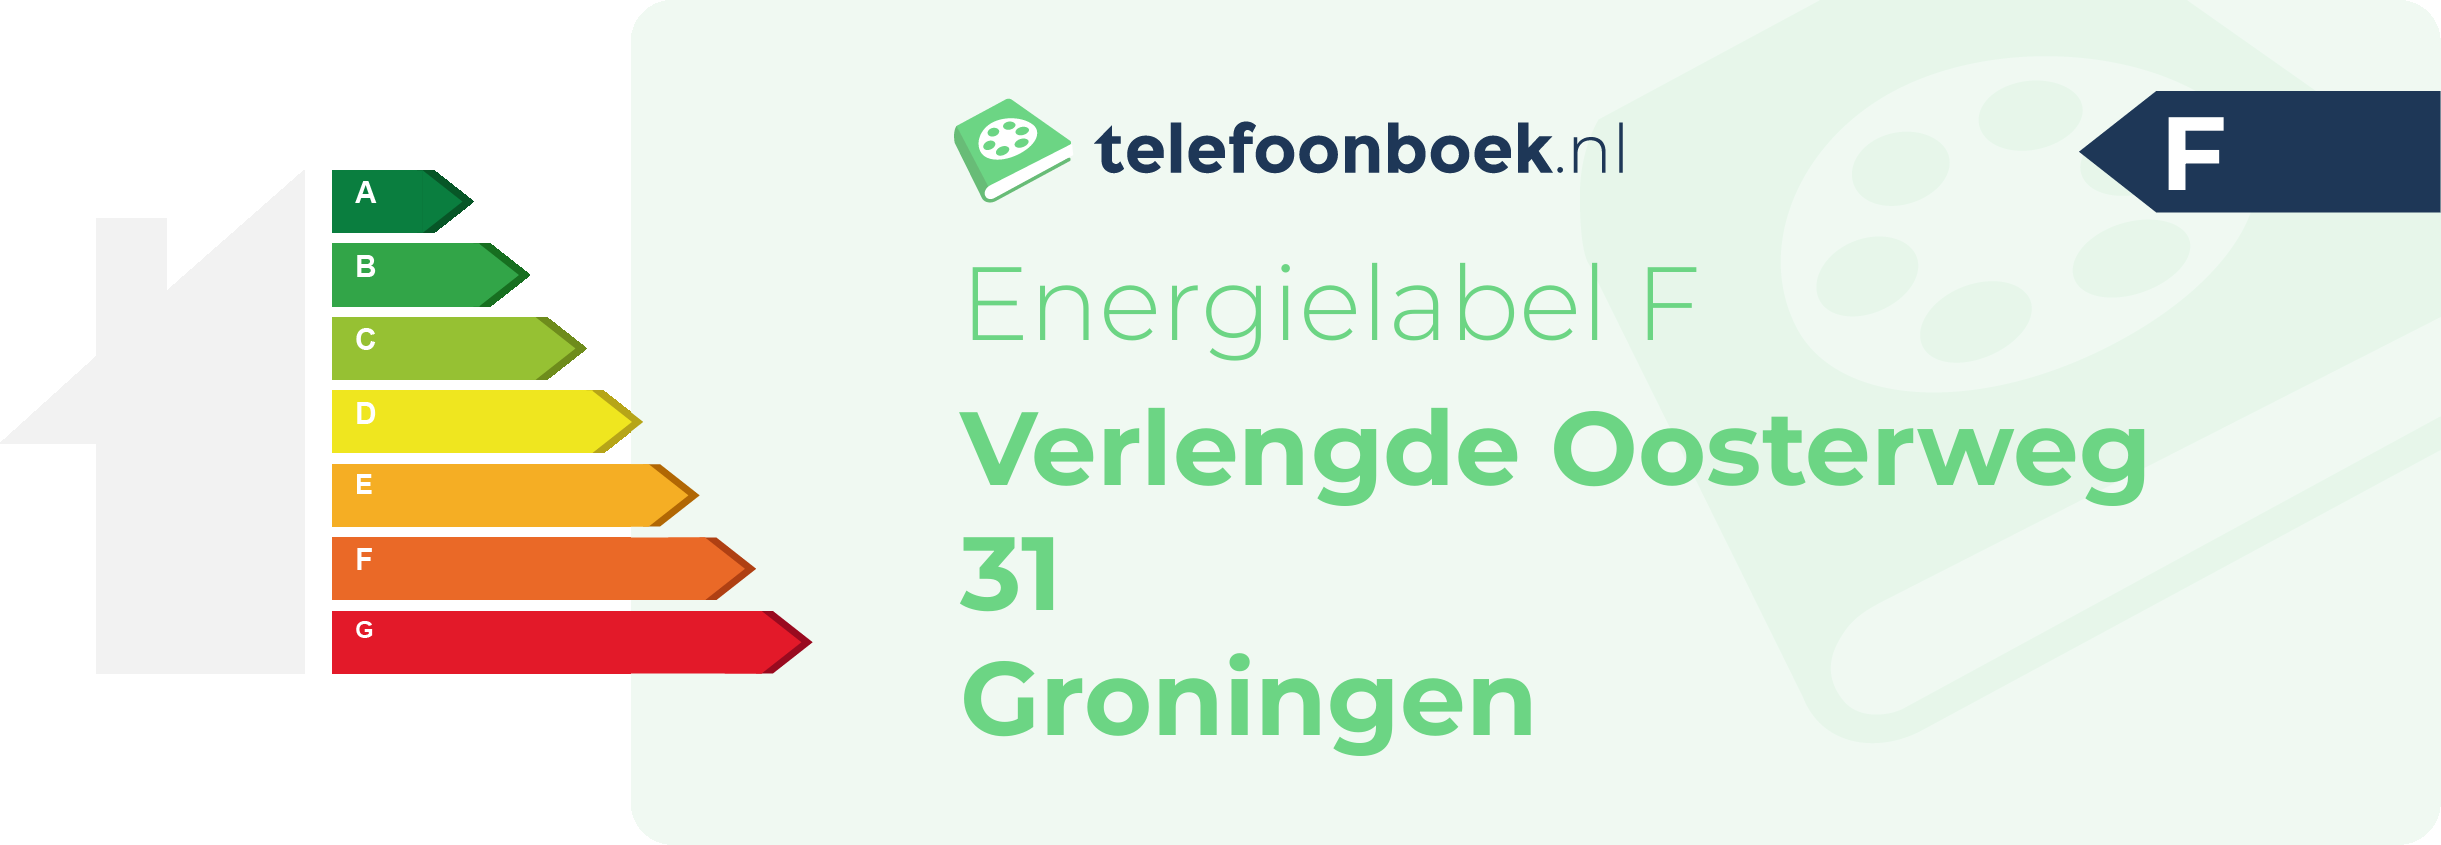 Energielabel Verlengde Oosterweg 31 Groningen